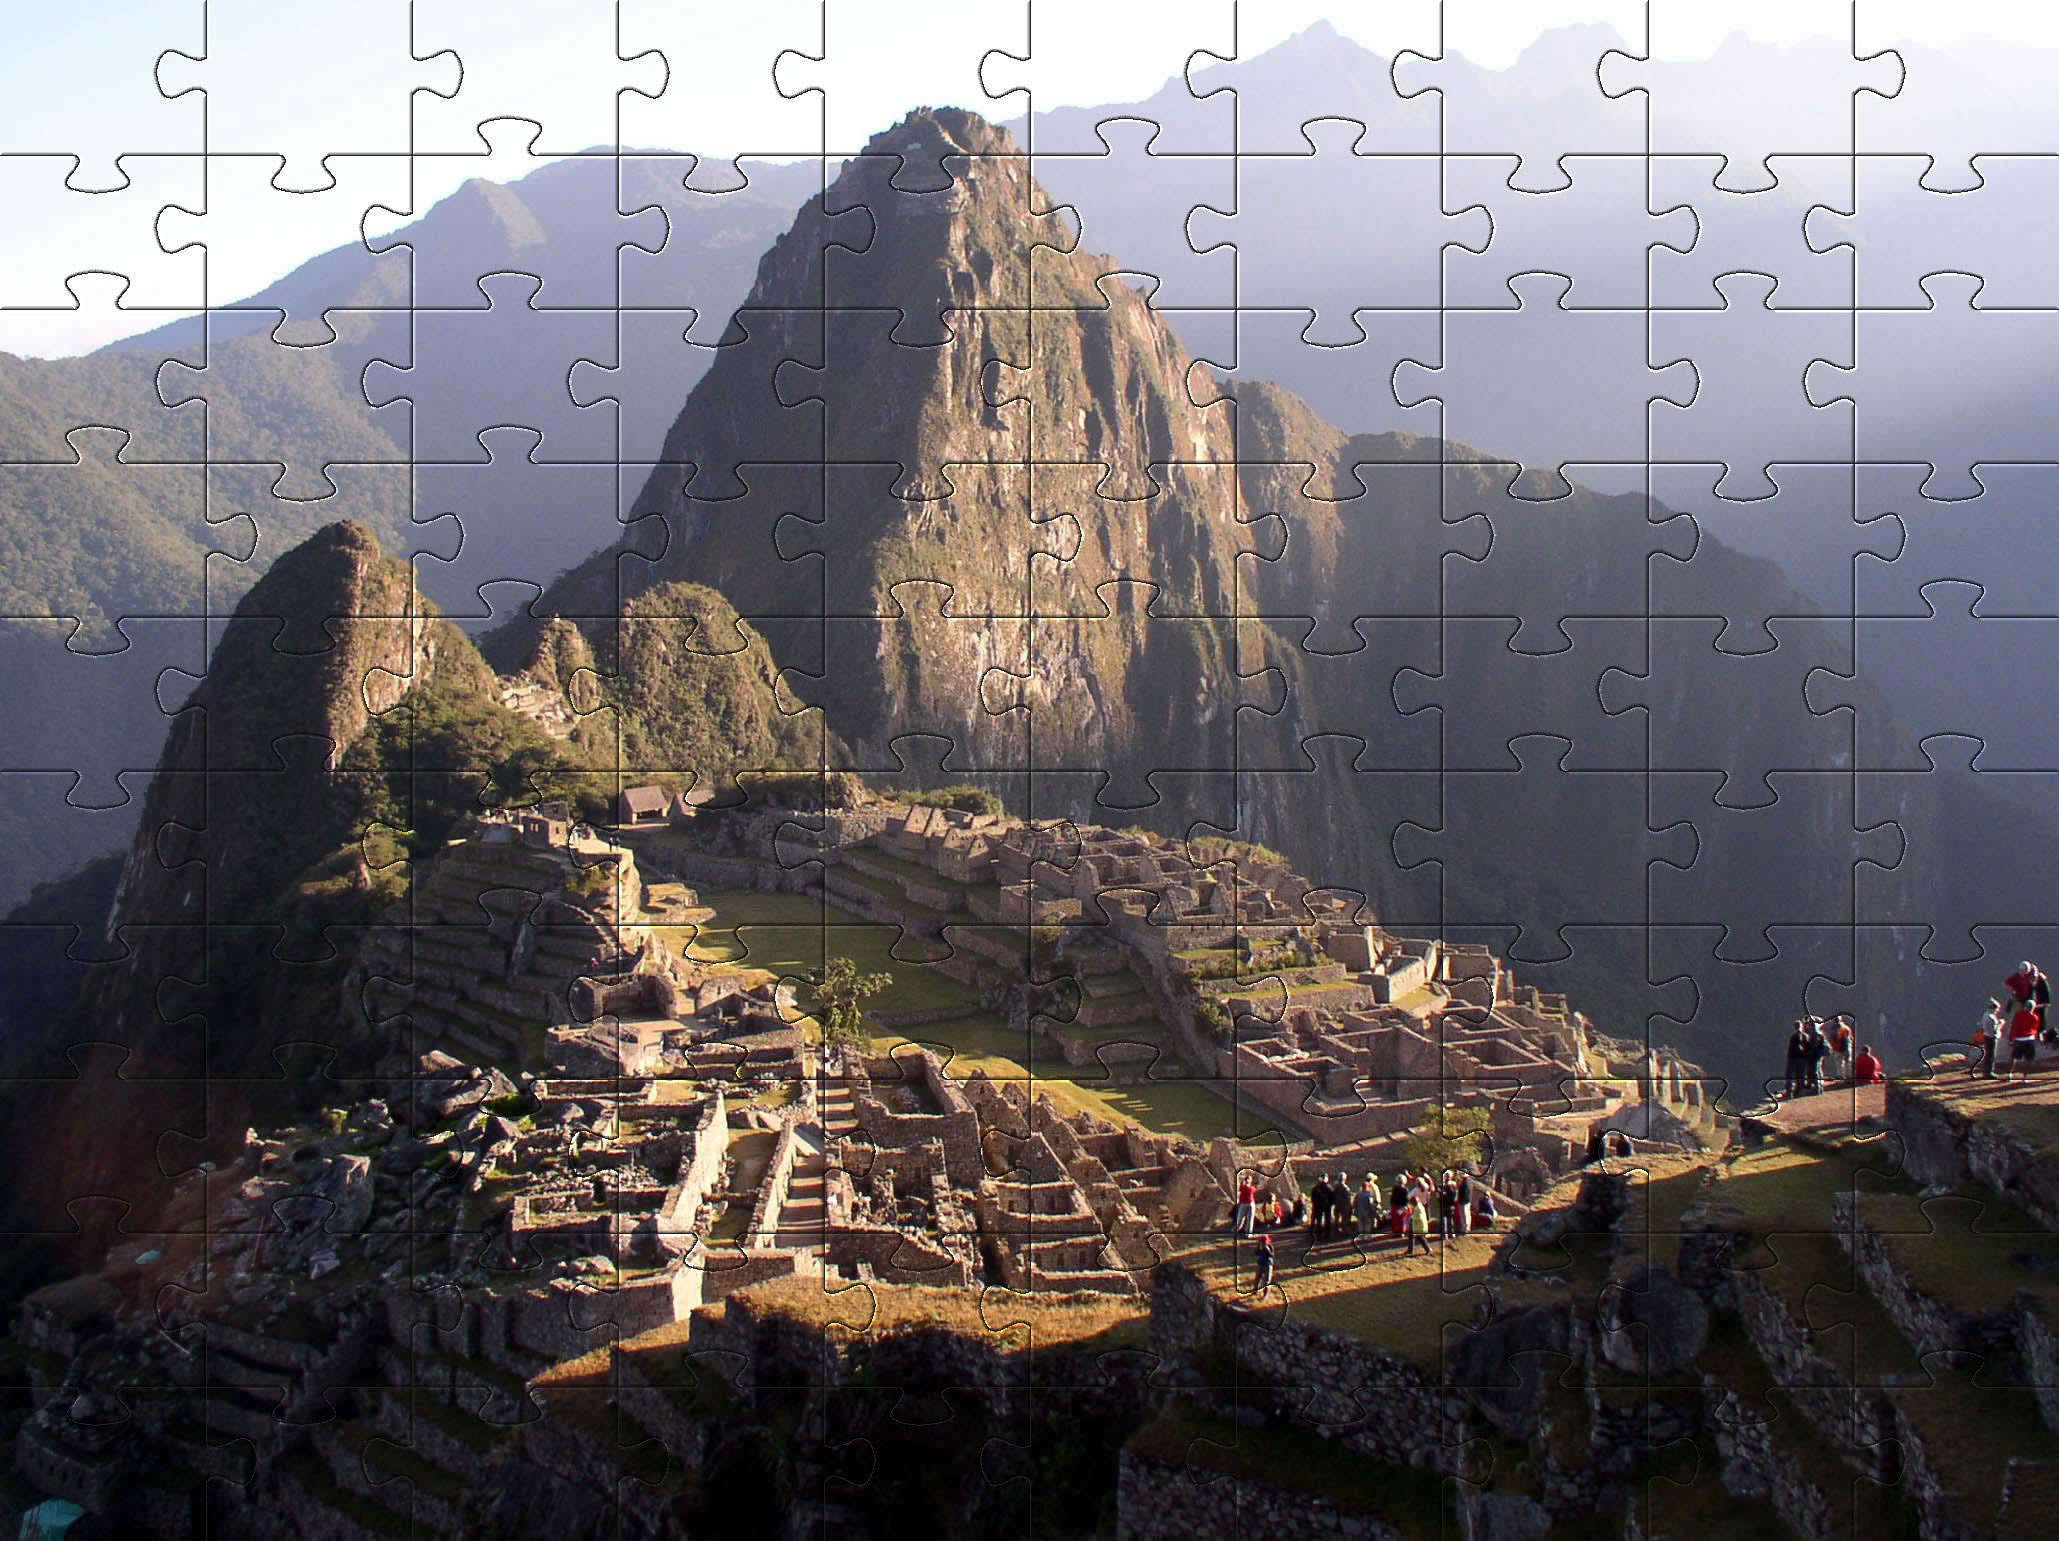 Pictures of Machu Picchu in Peru jigsaw